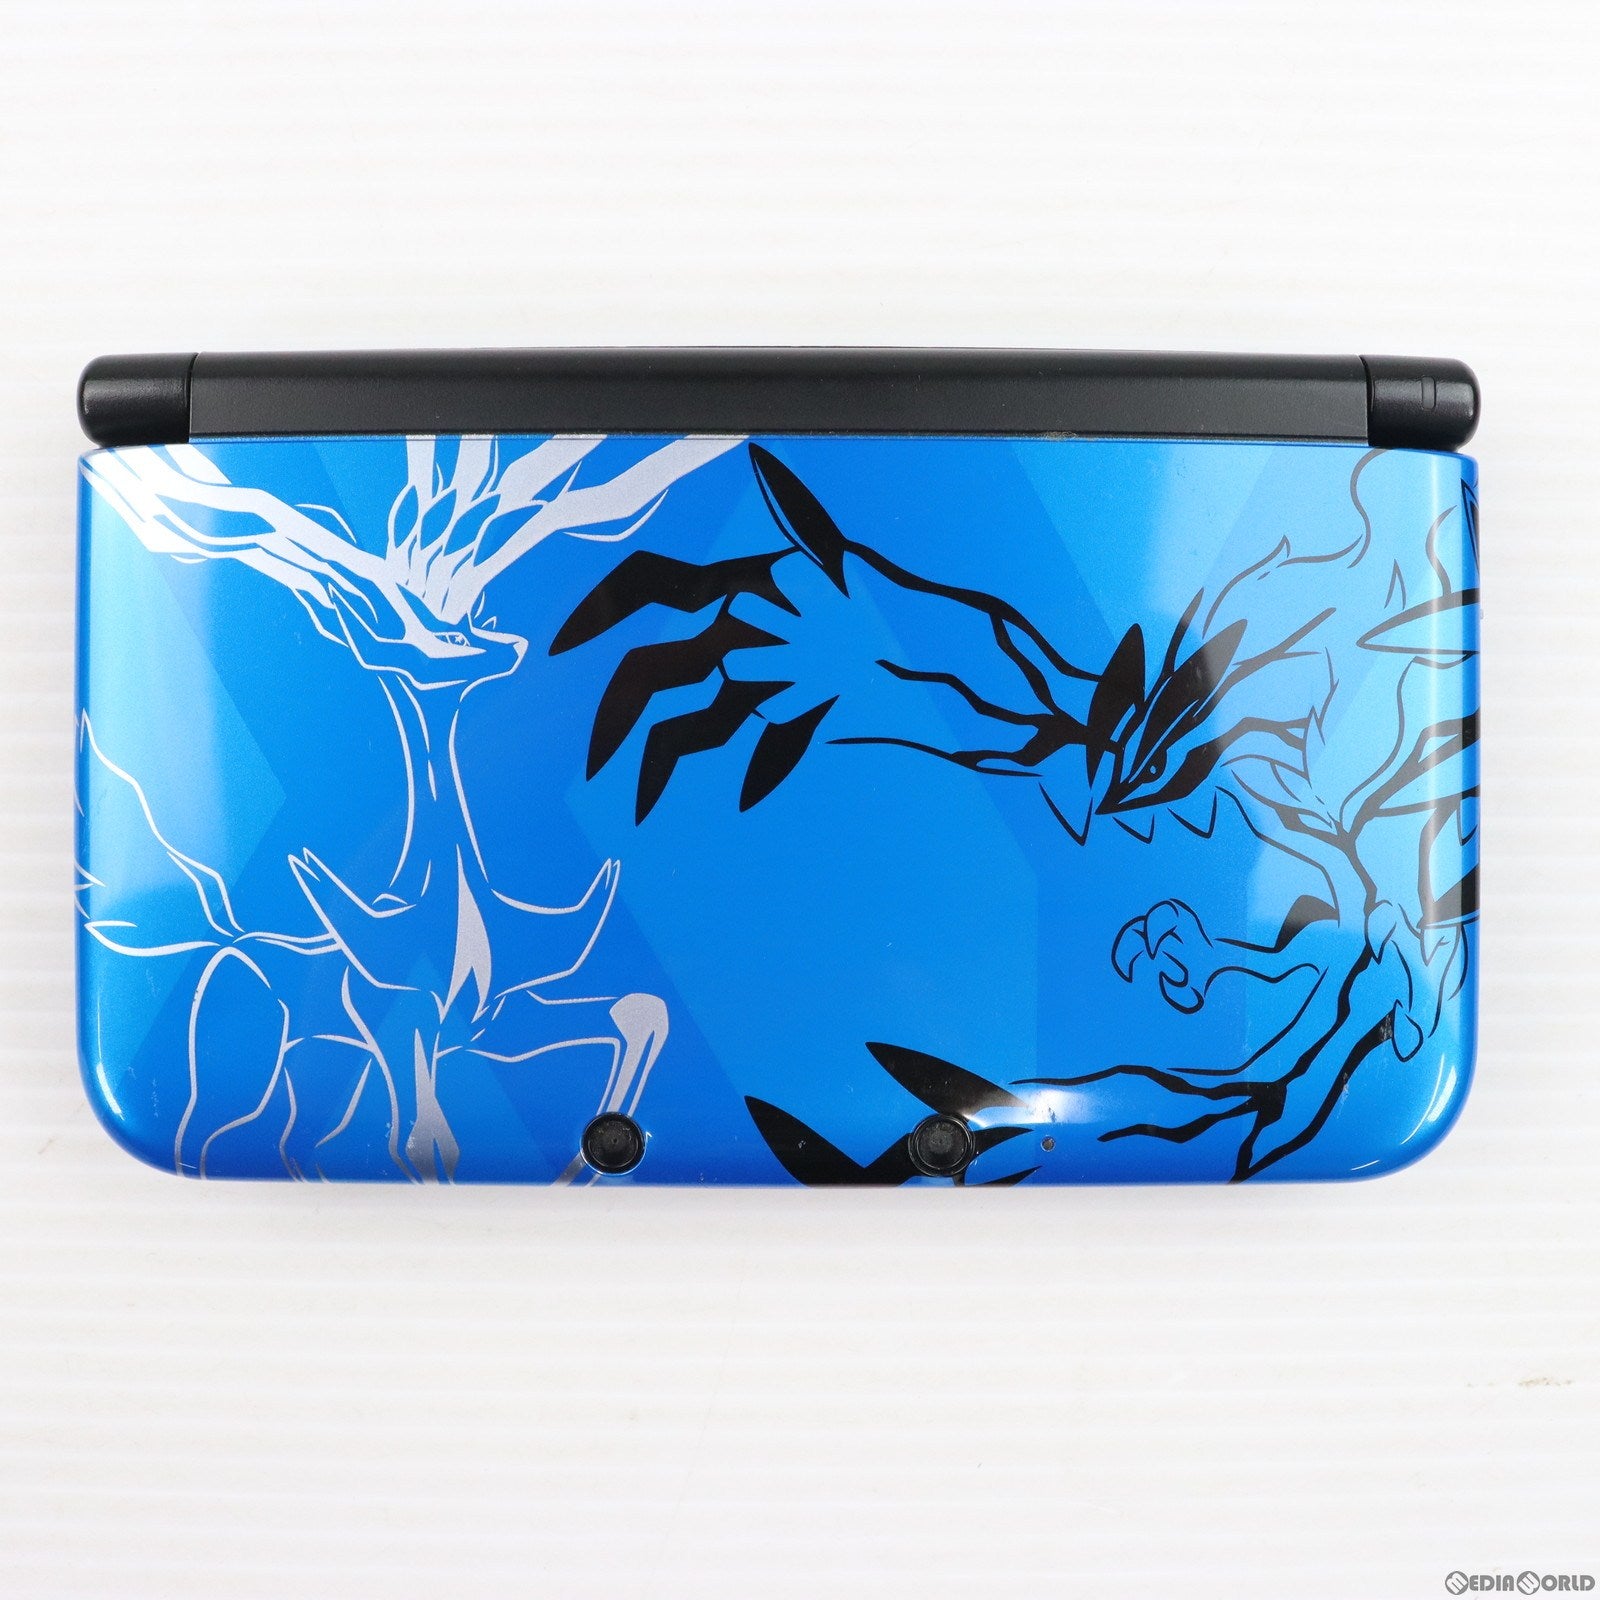 【中古即納】[本体][3DS]ポケットモンスターXパック ゼルネアス・イベルタル ブルー(SPR-S-BMDS)(20131012)